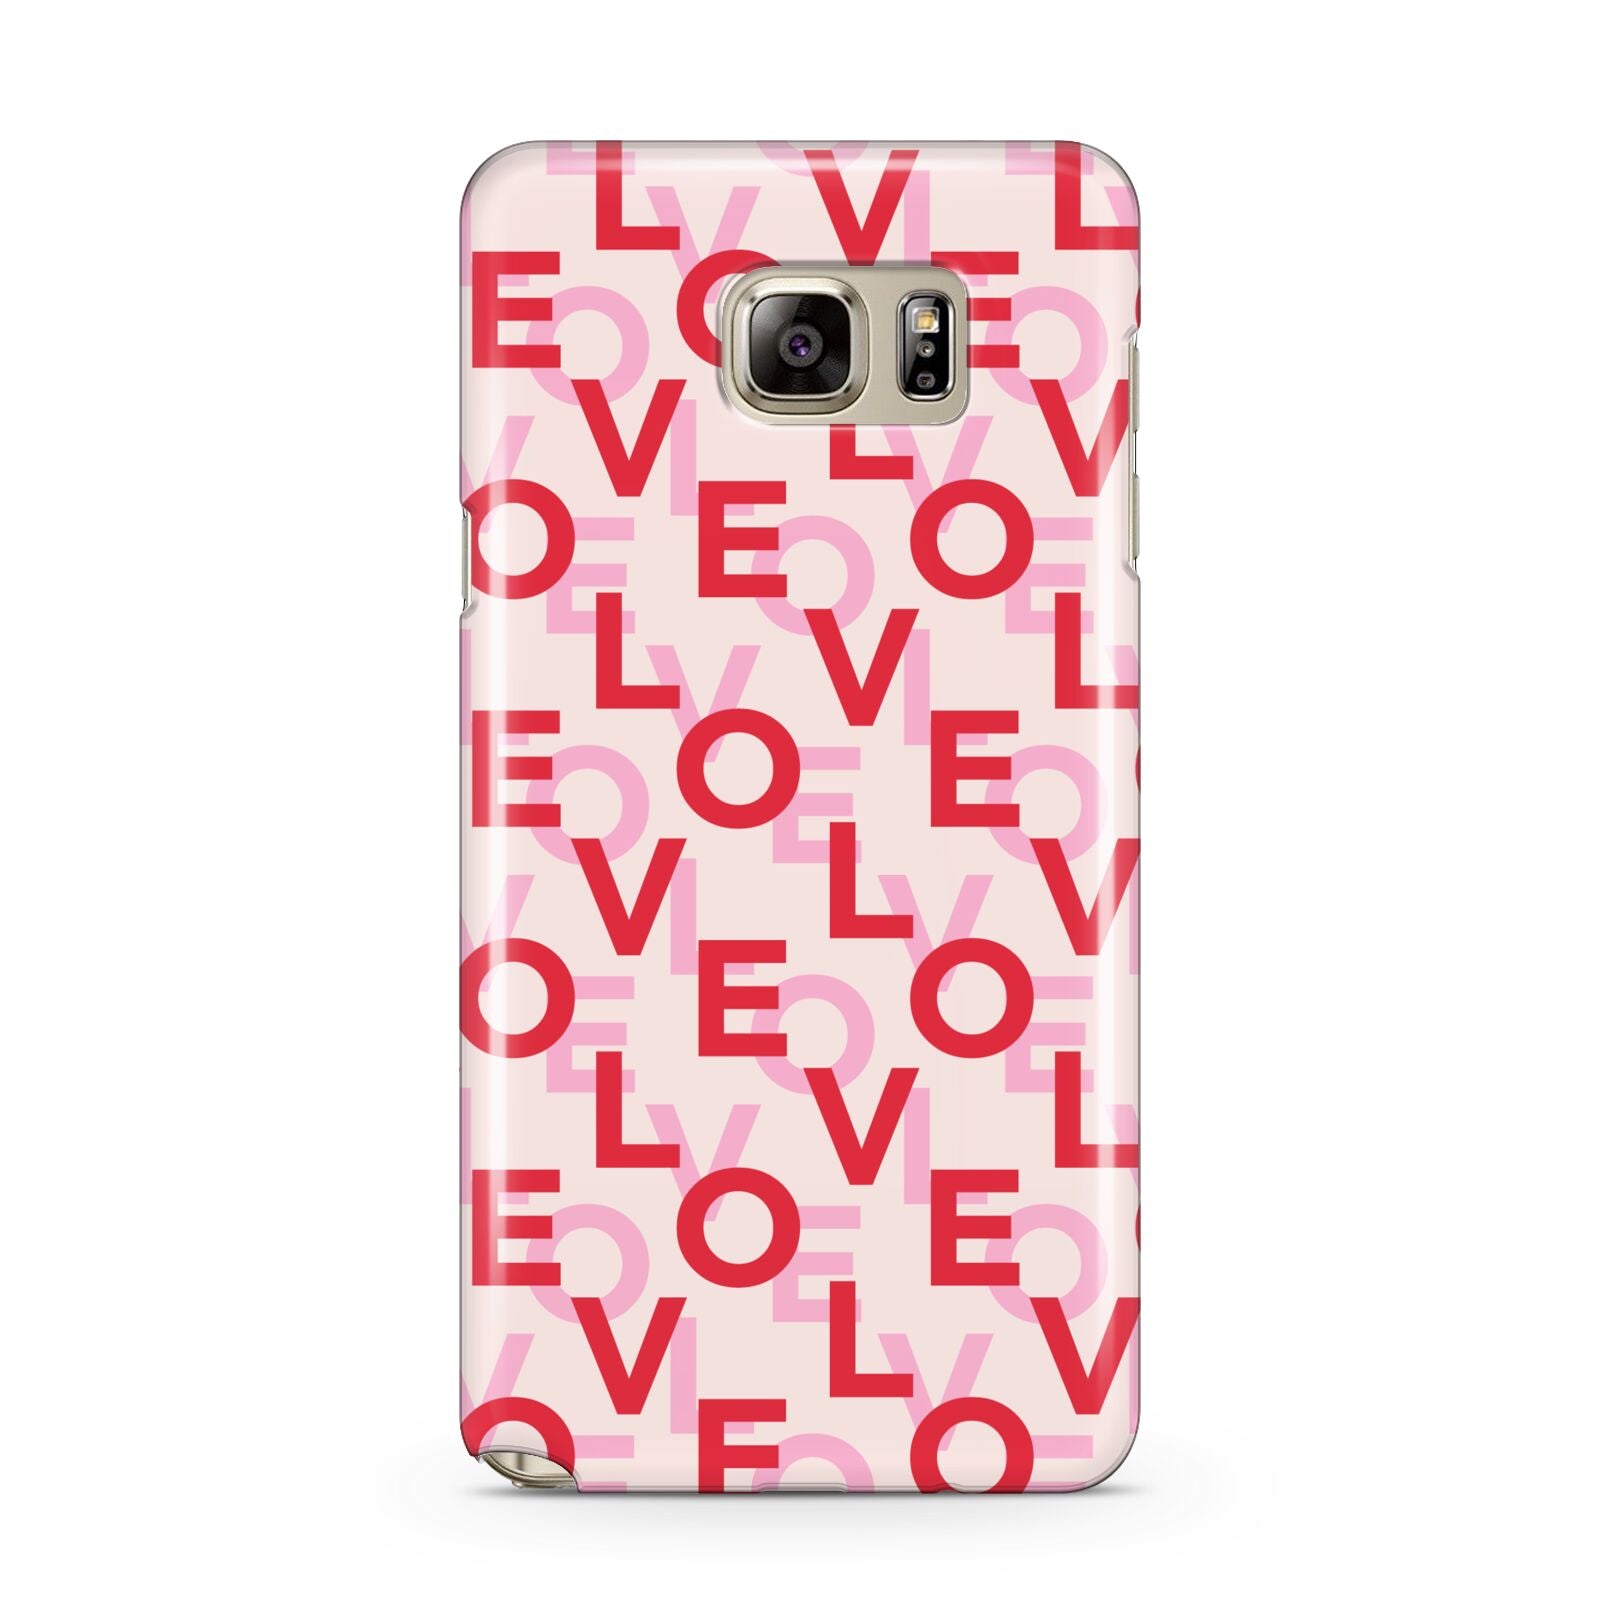 Love Valentine Samsung Galaxy Note 5 Case